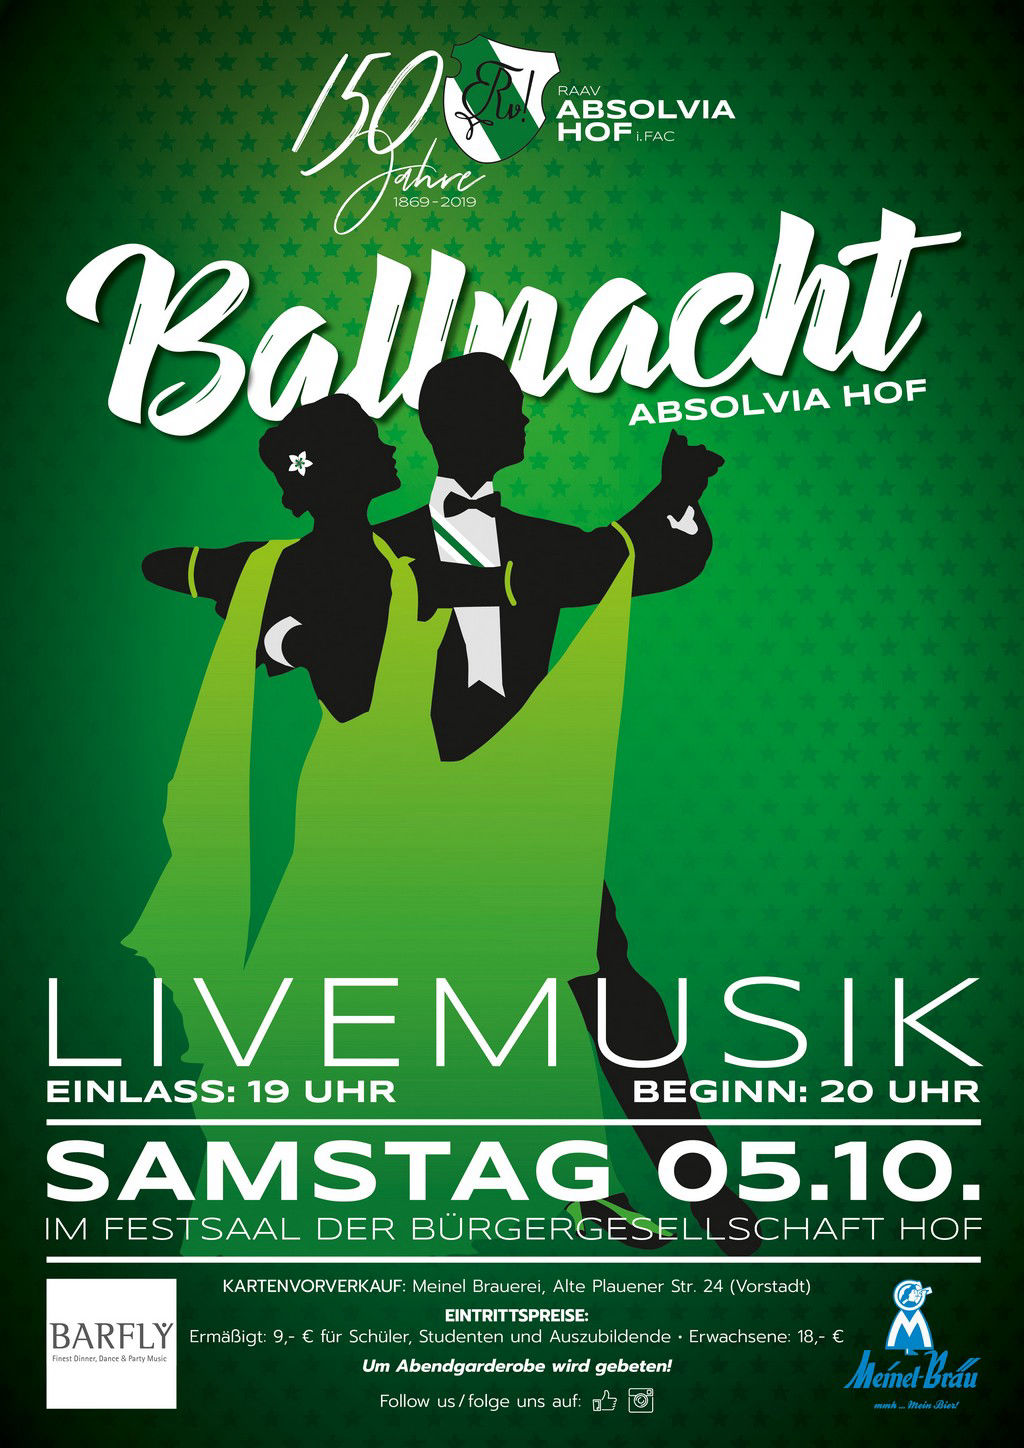 Absolvia Ballnacht 2019 mit Barfly aus Kulmbach am 05.10.2019 in der Bürgergesellschaft Hof